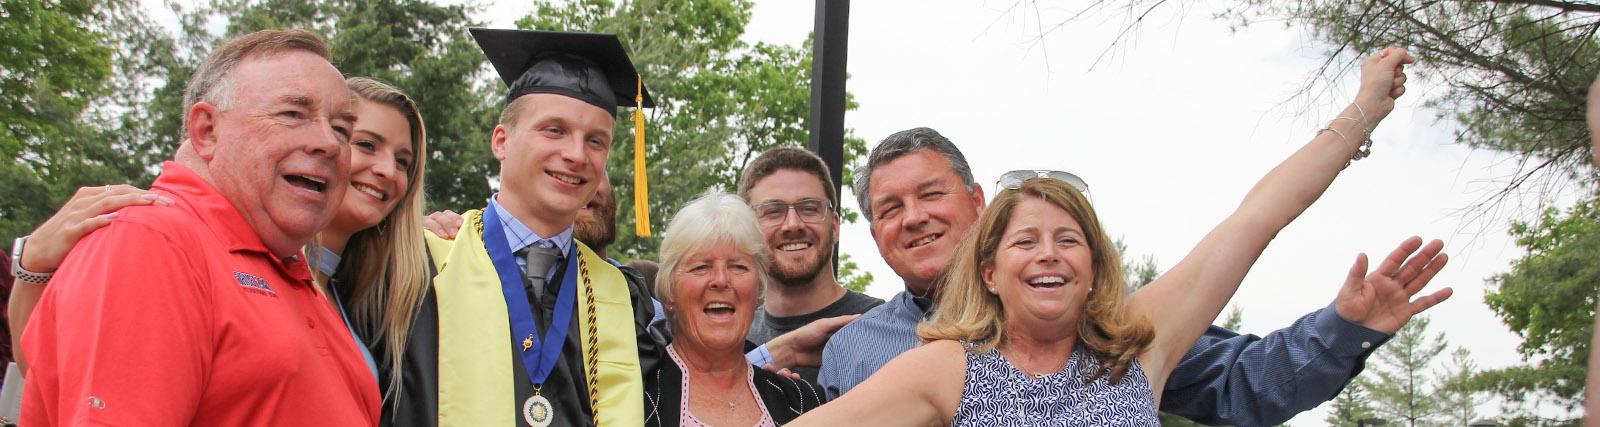 family celebrates their graduate